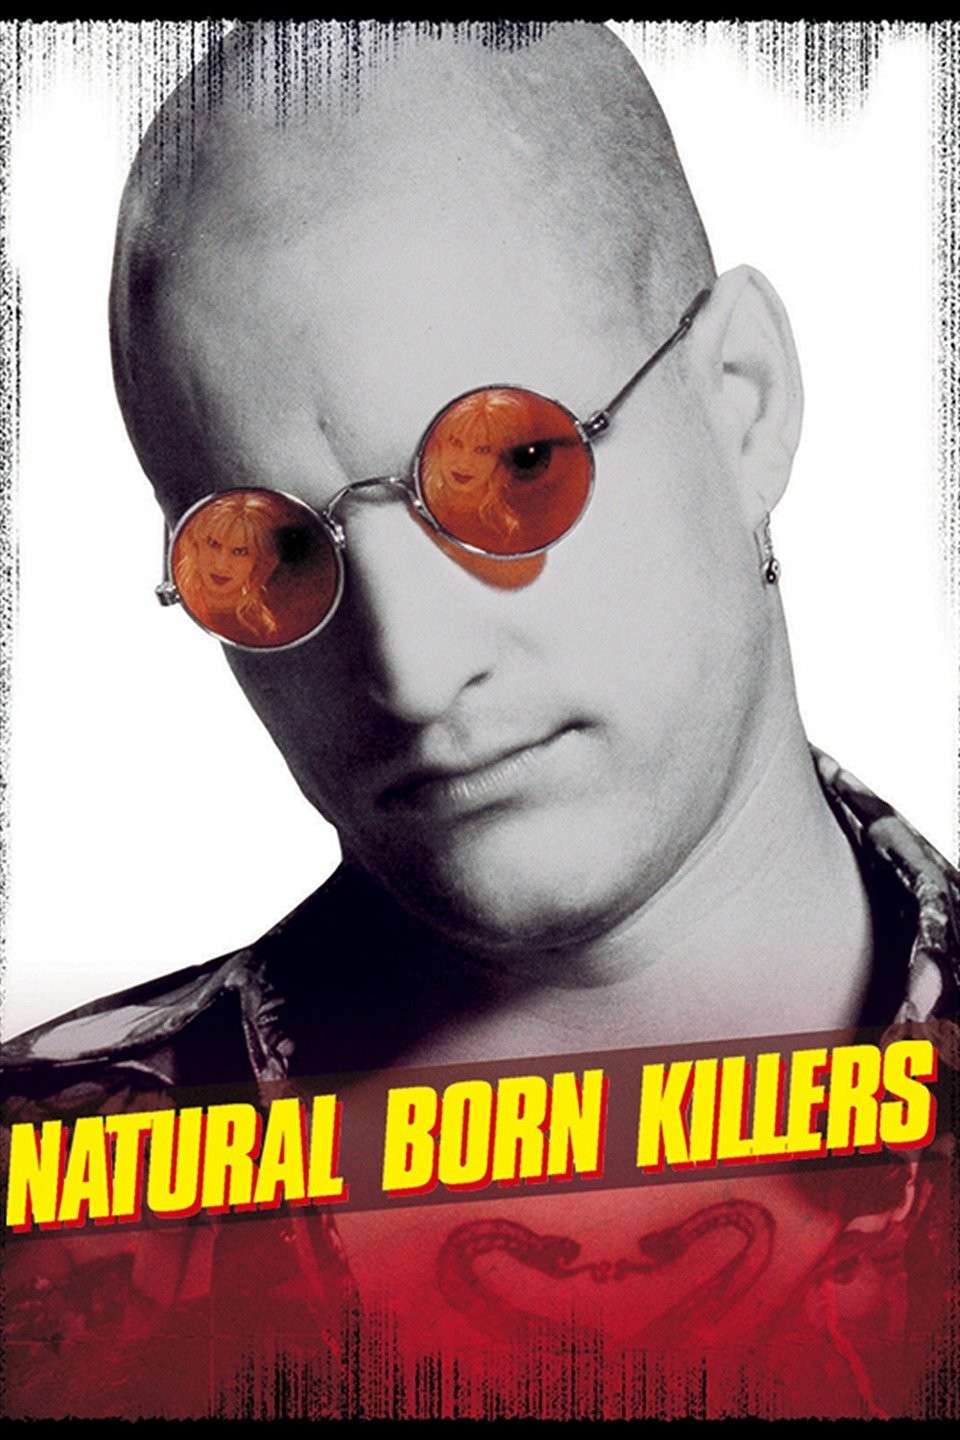 FILME] Assassinos por Natureza (Natural Born Killers) - Crítica 